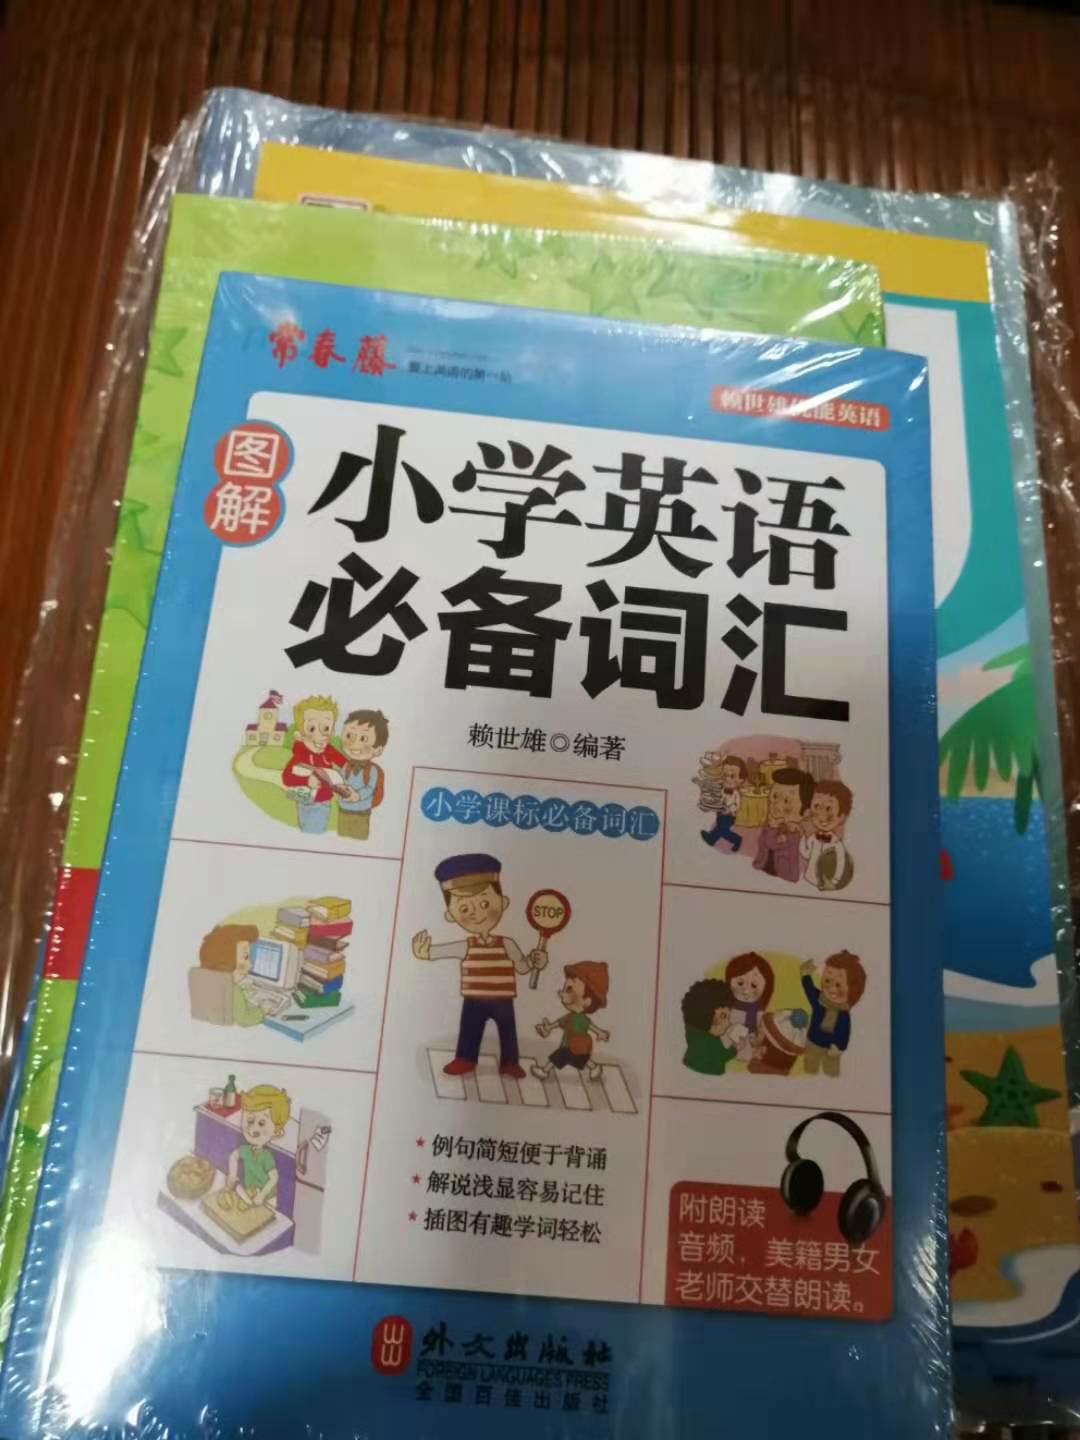 朋友英语特别好，她给她孩子买了这个，觉得好推荐给我的。